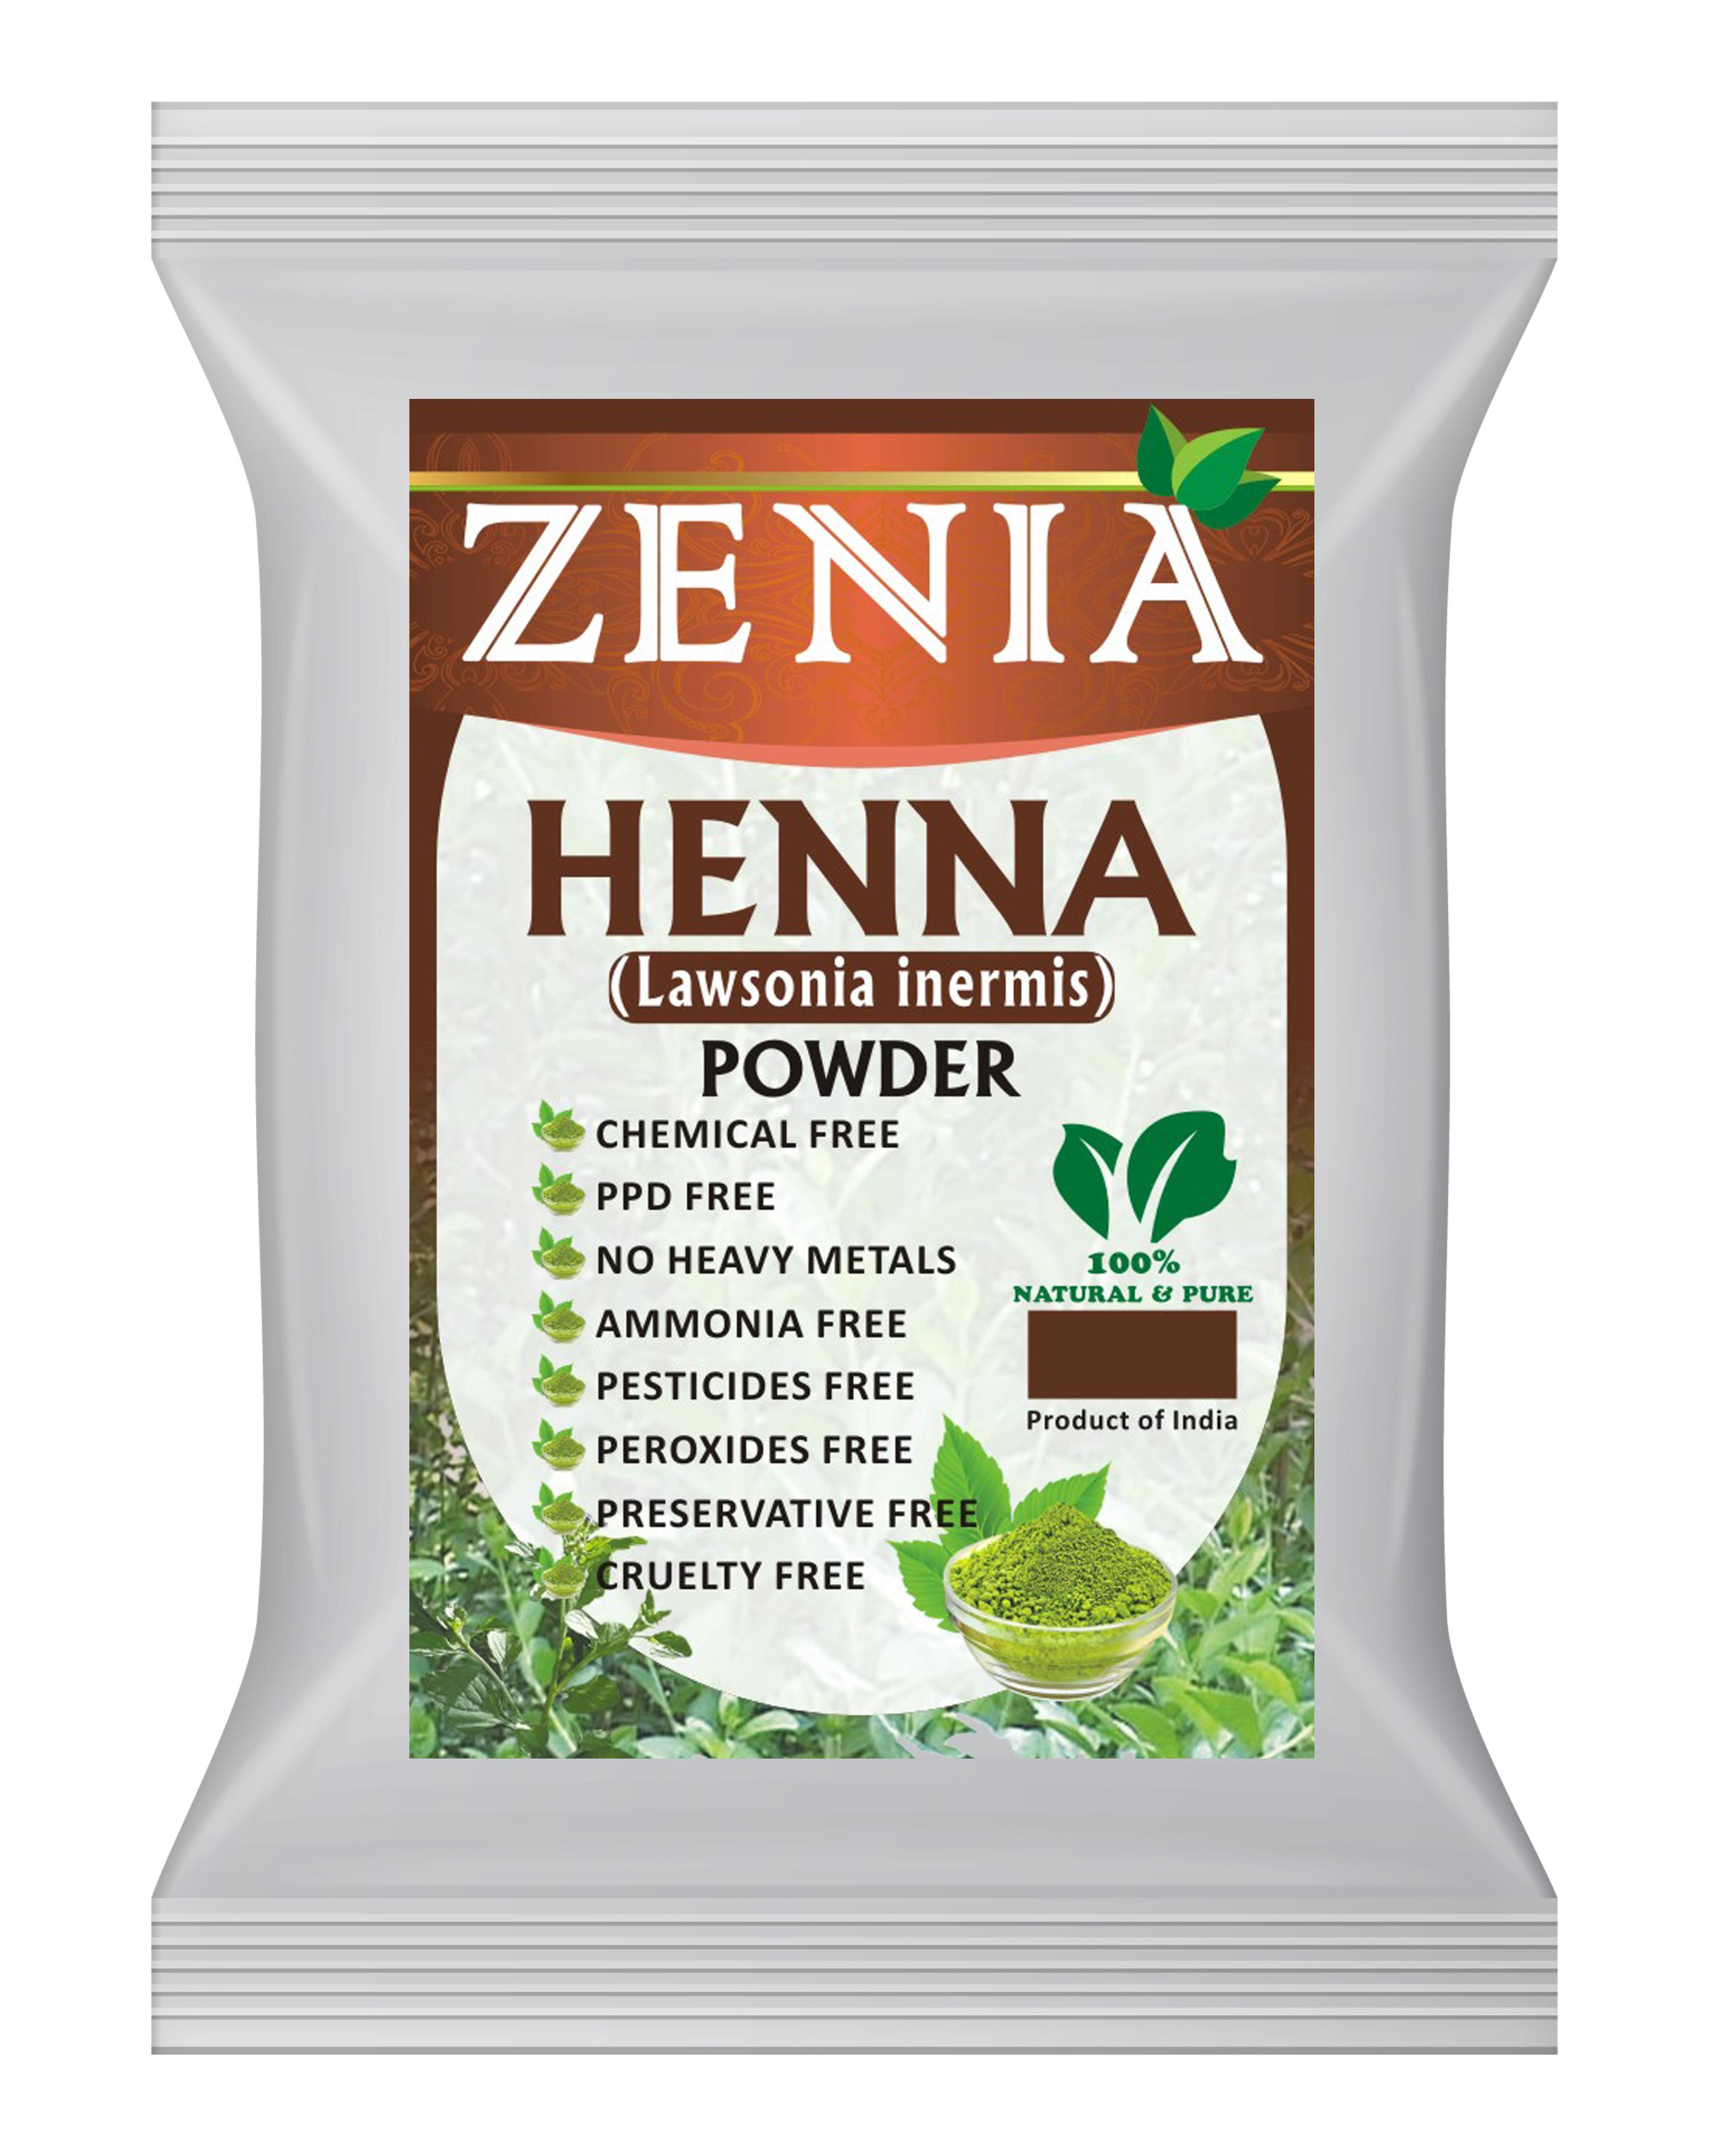 Zenia Henna Powder